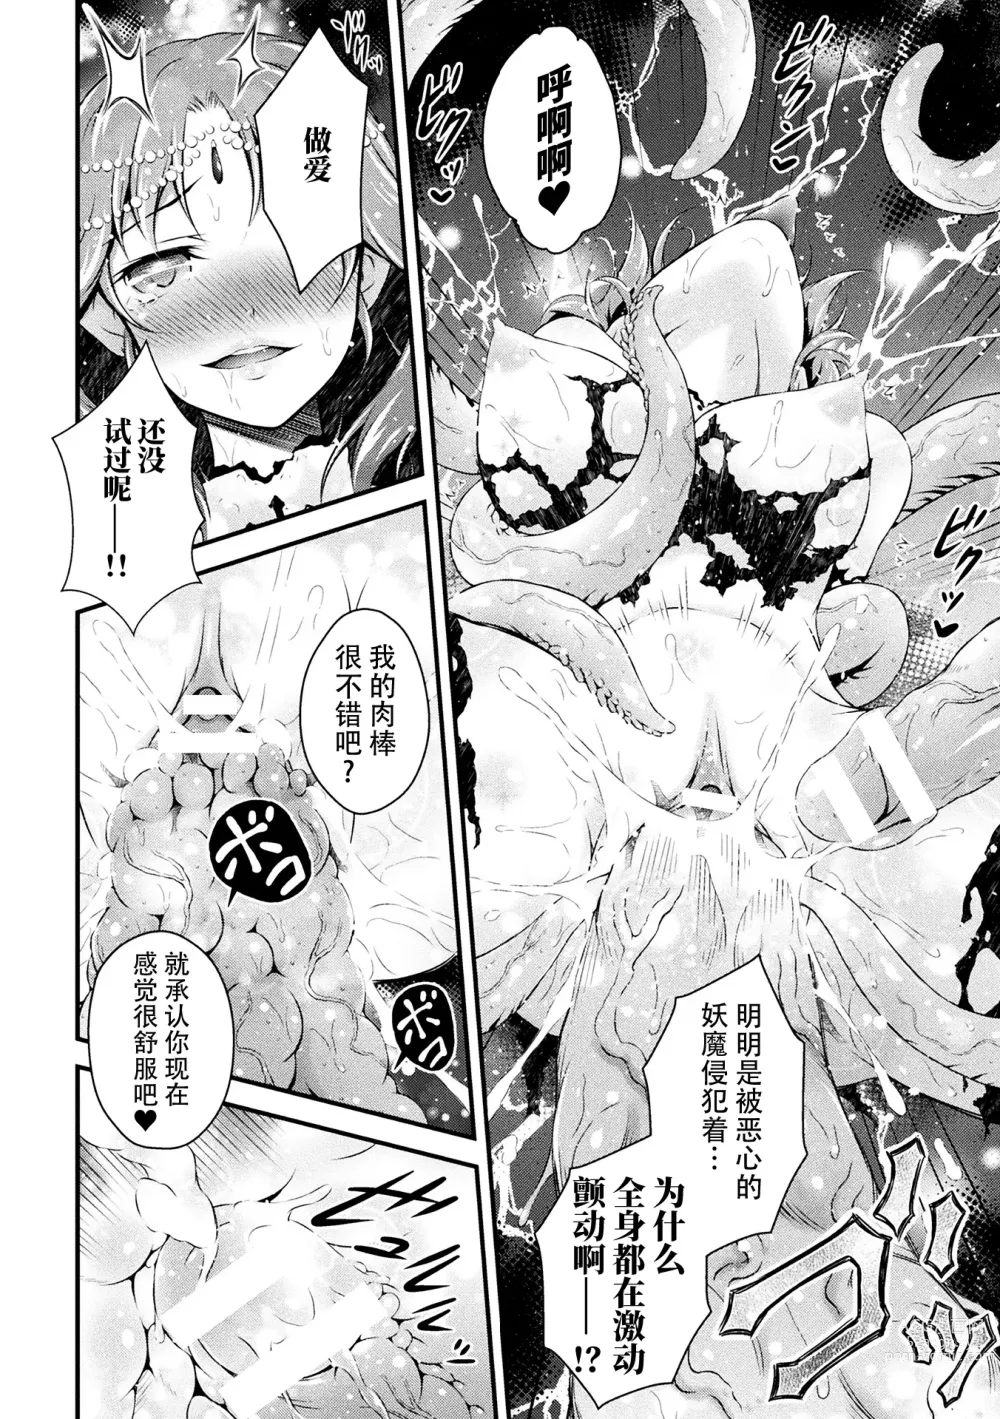 Page 13 of manga Seijo Sanran